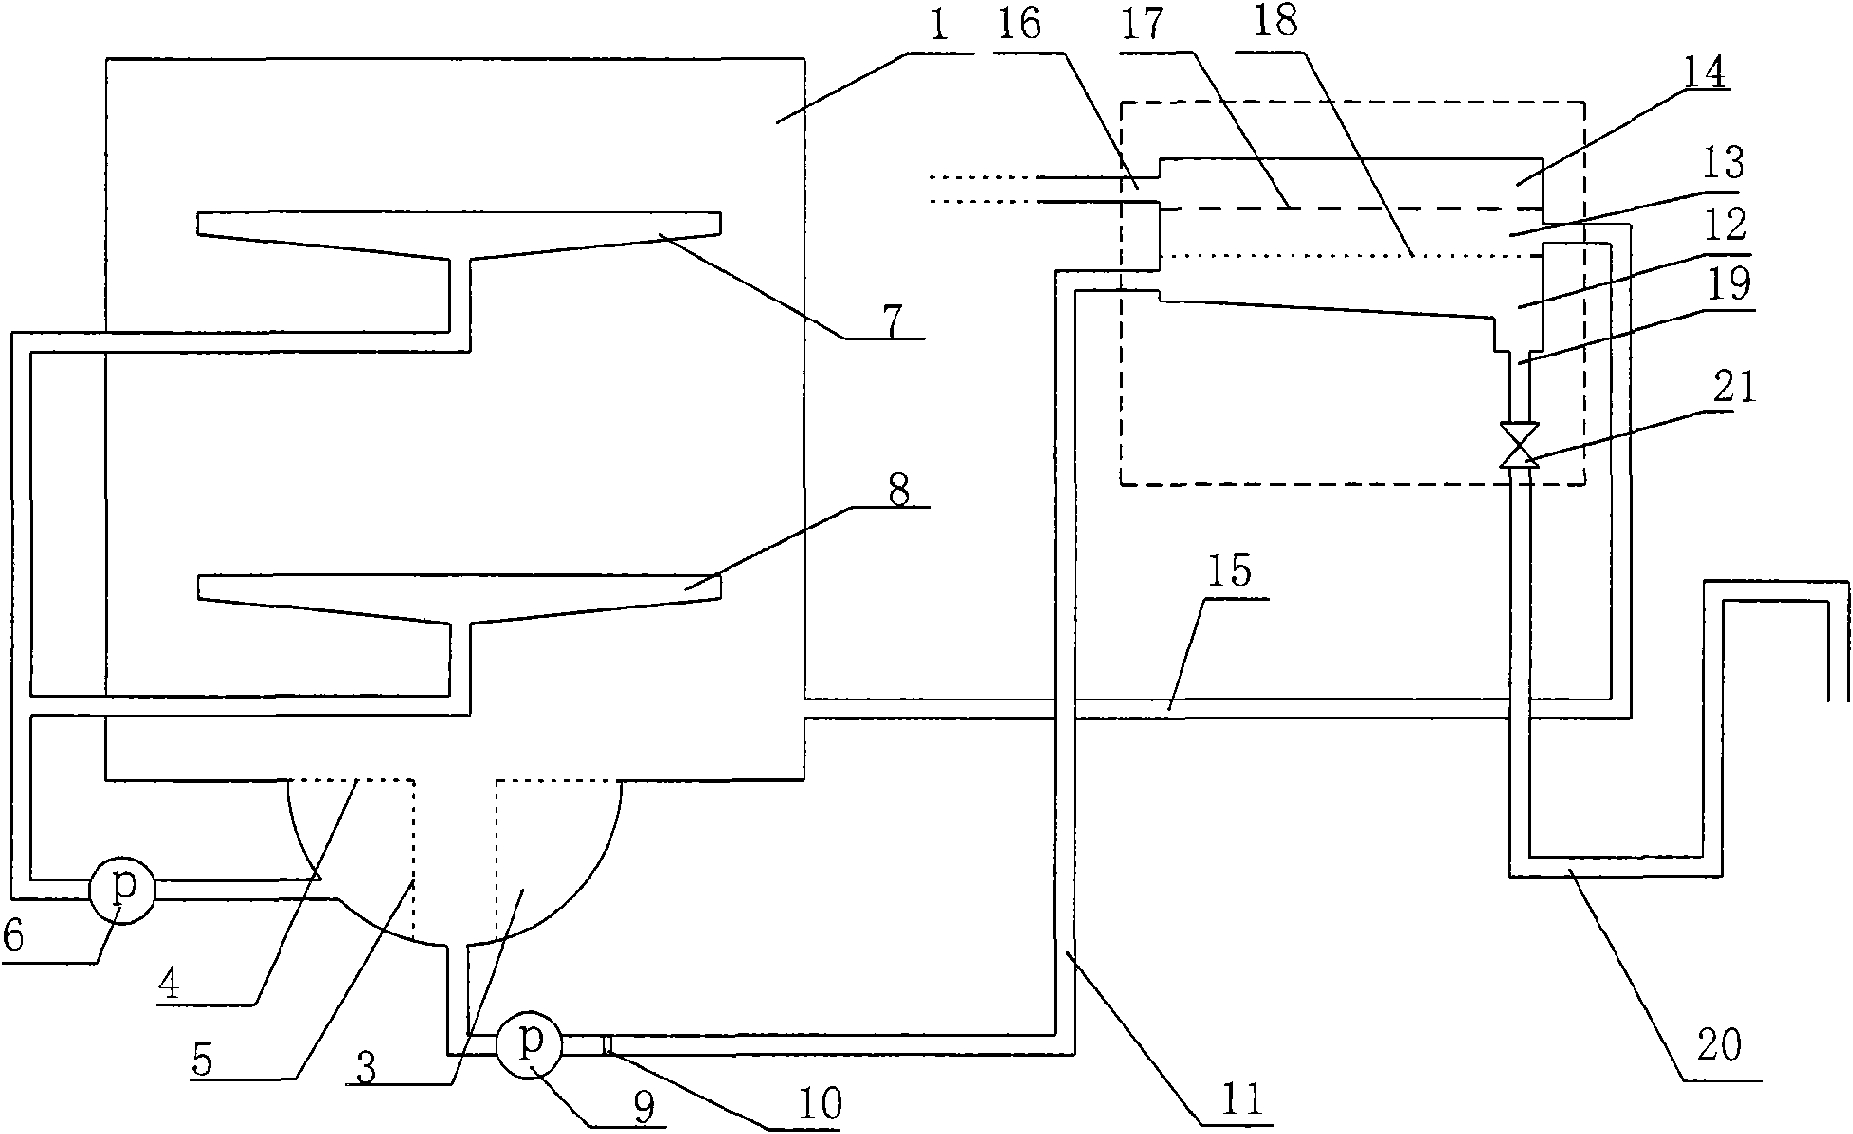 Filtering system for dishwasher